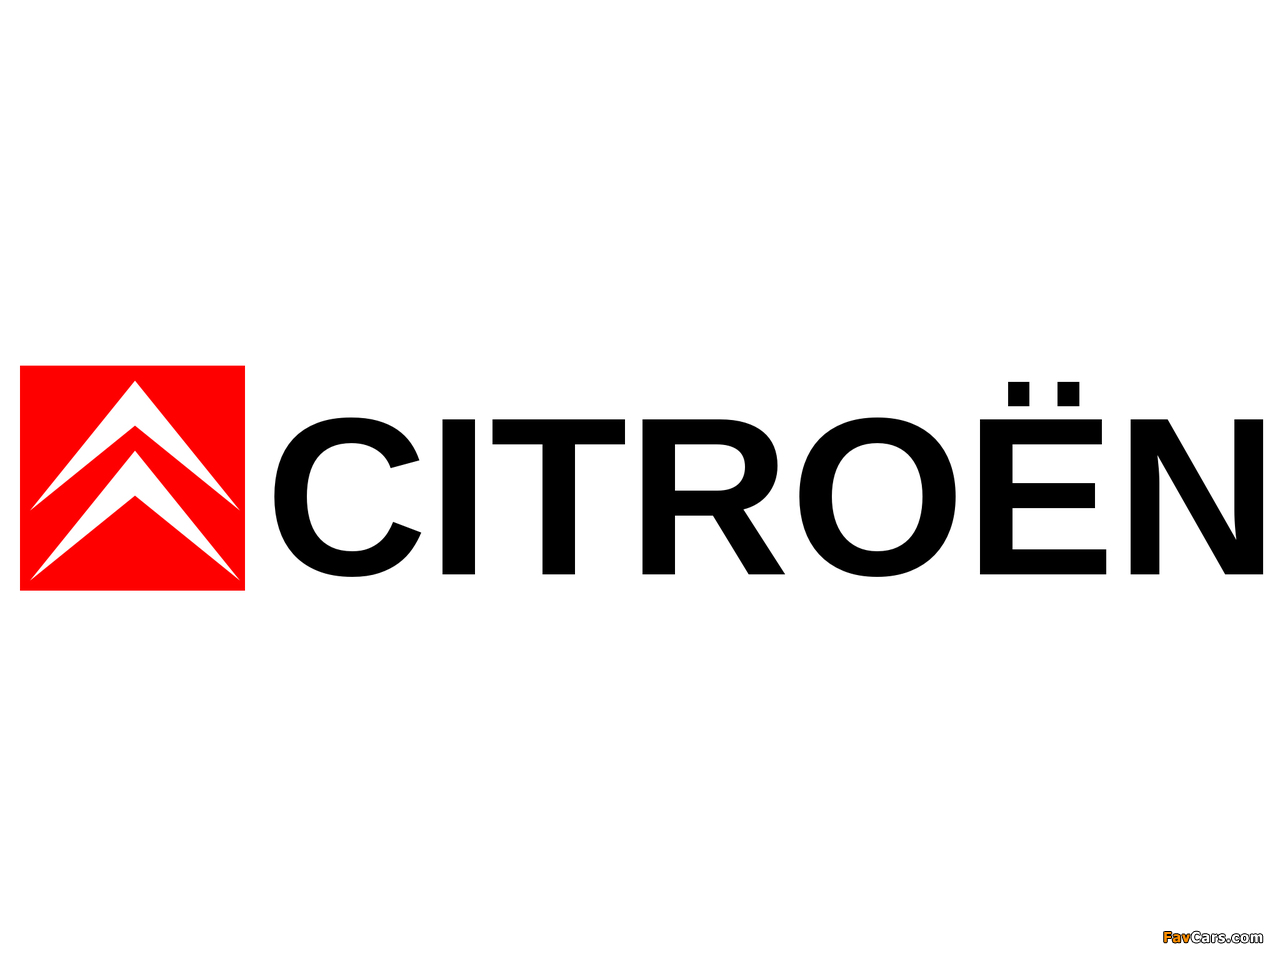 Images of Citroën (1280 x 960)